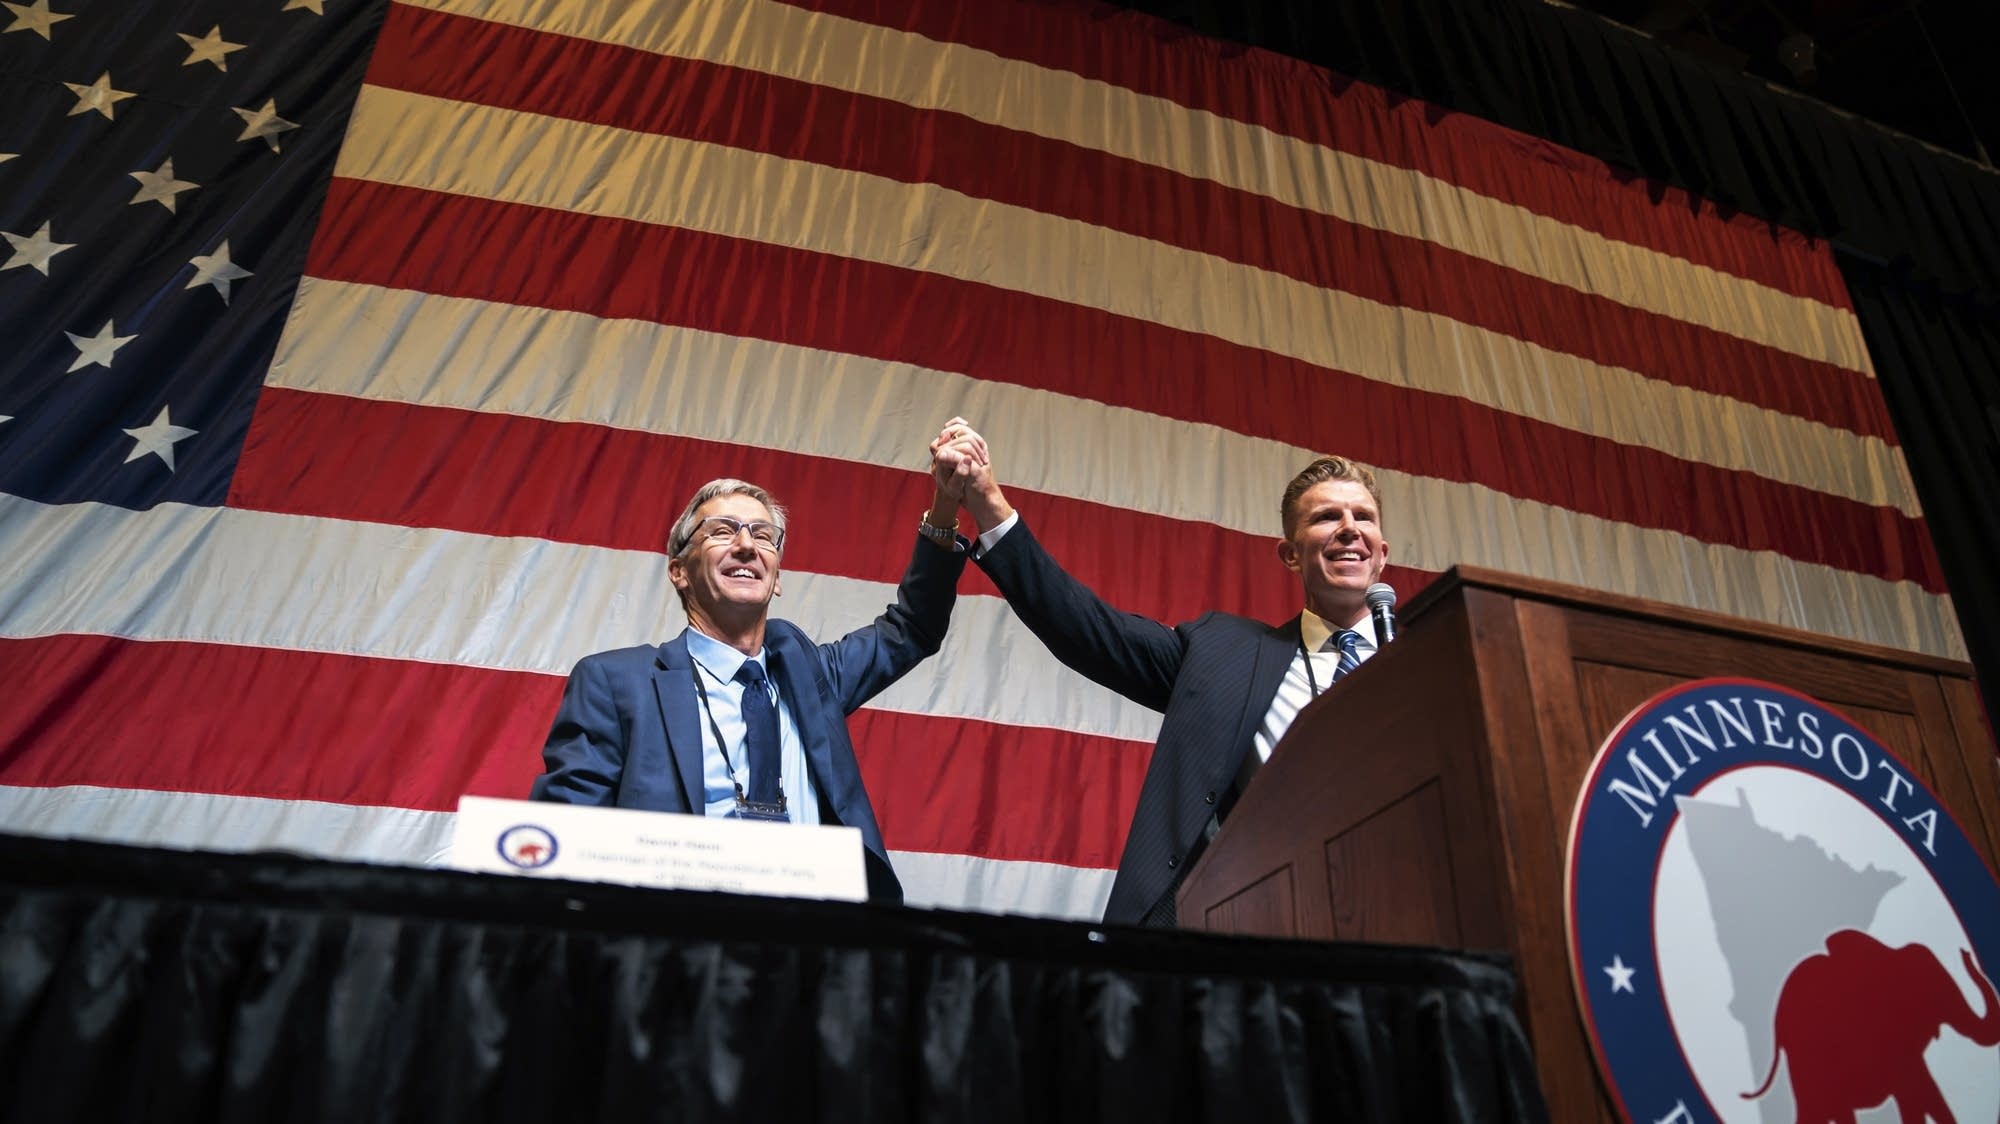 Jensen wins GOP endorsement for governor